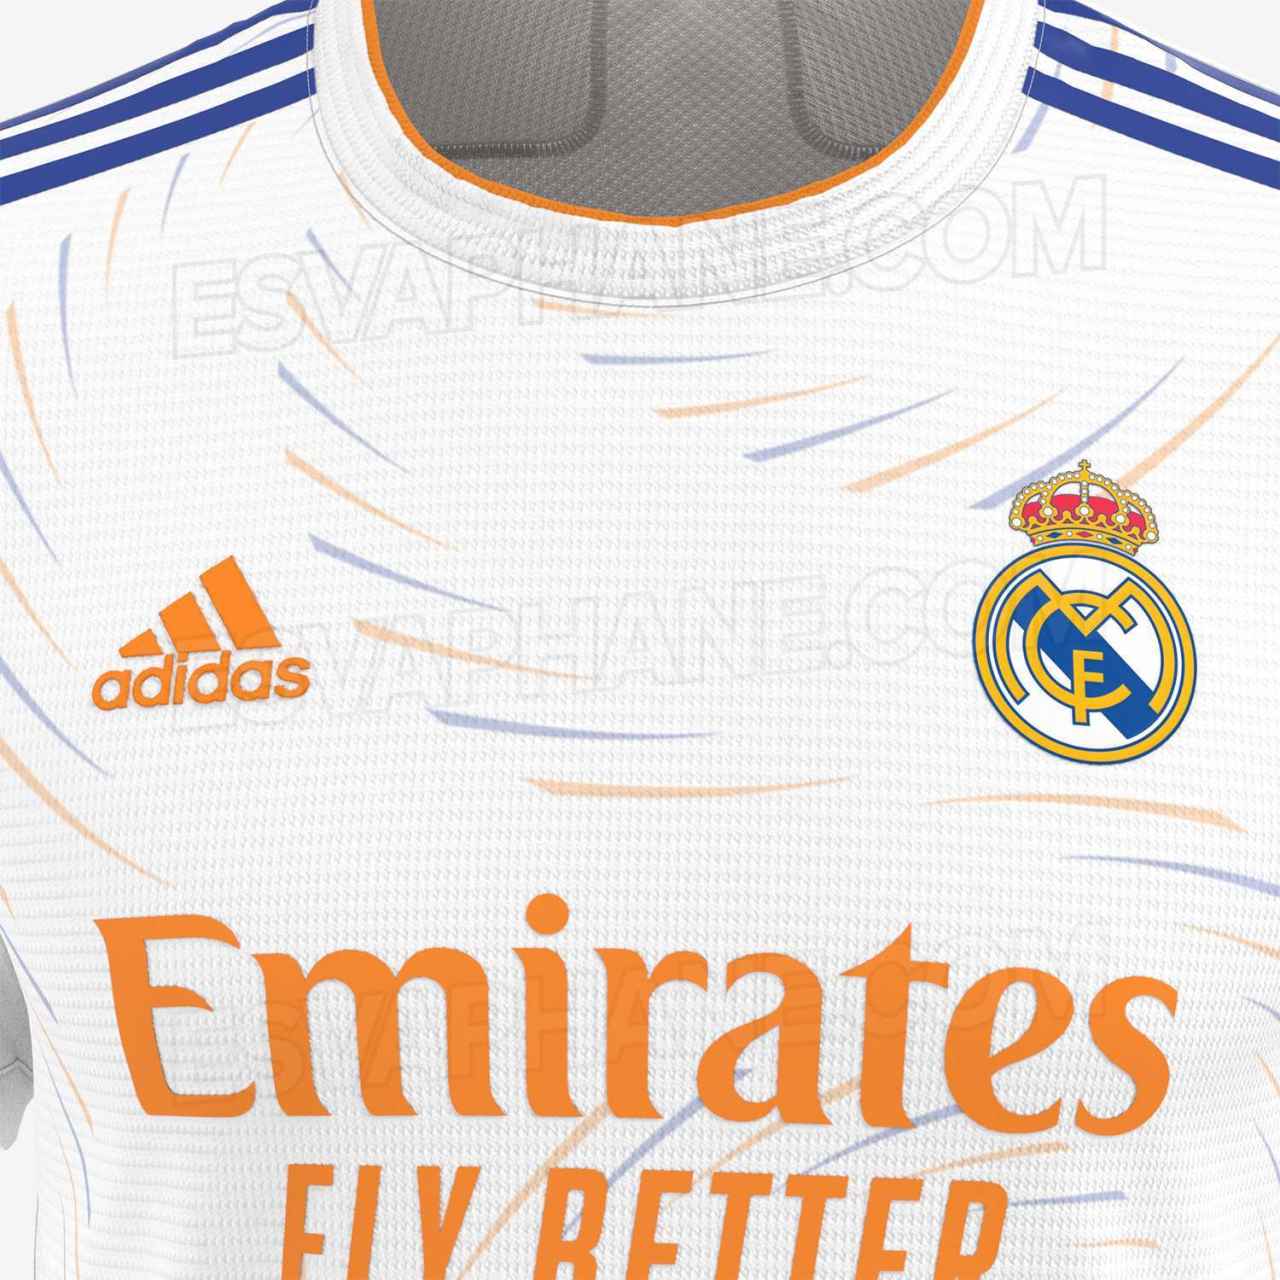 La primera camiseta del Real Madrid filtrada para la temporada 2021/2022. Foto: footyheadlines.com